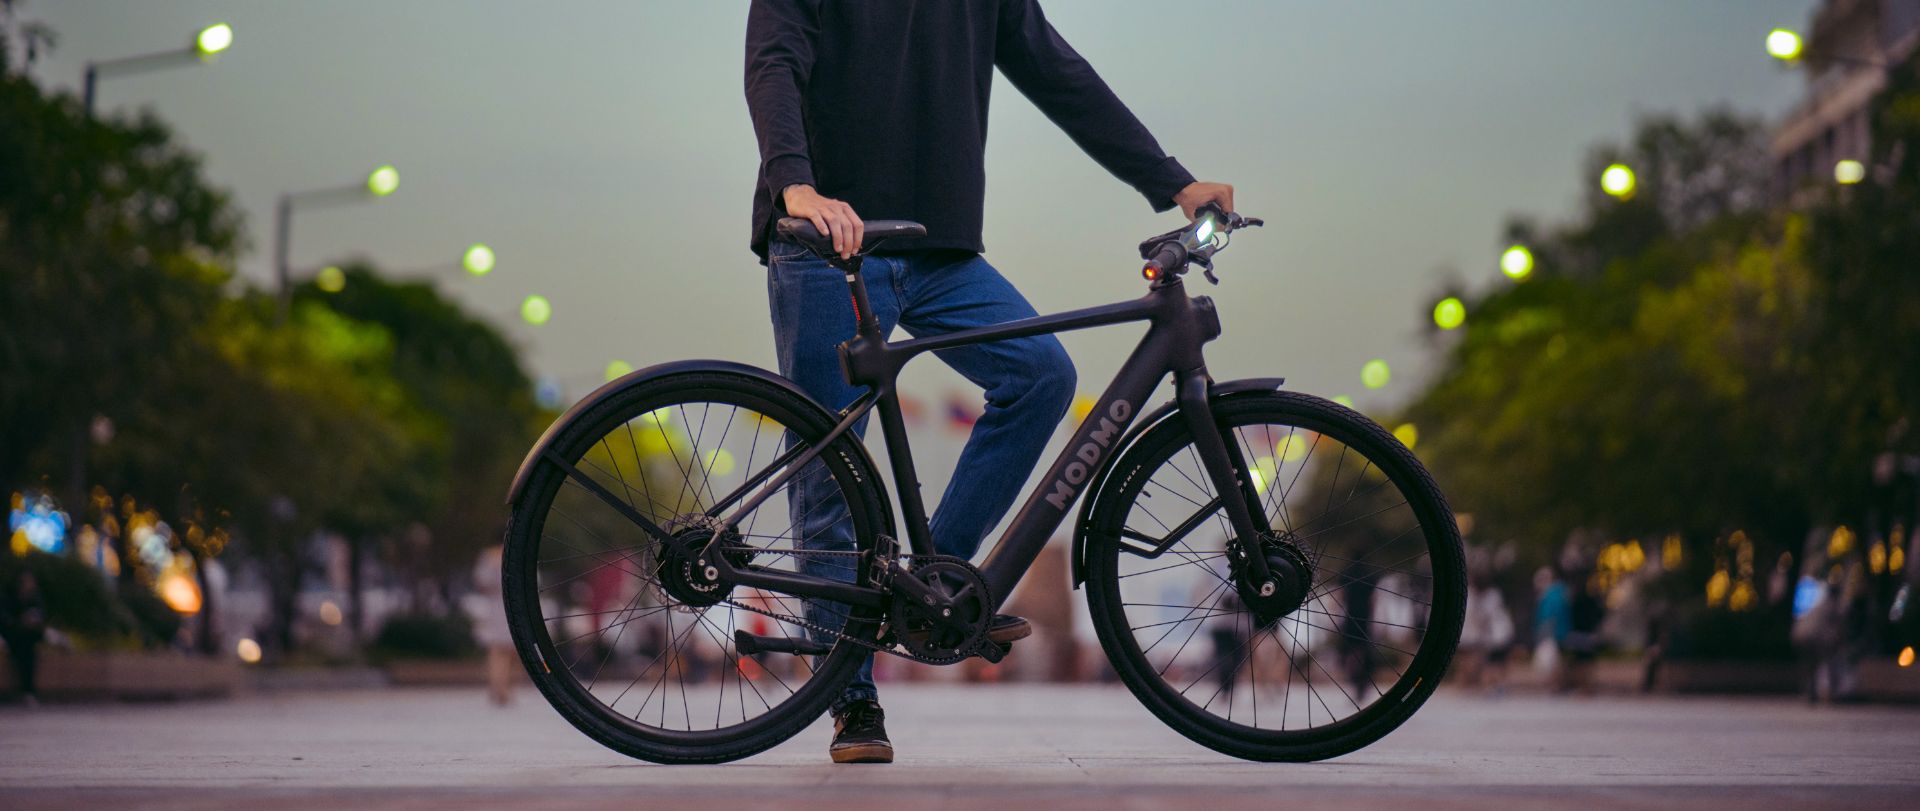 Modmo Saigon+ Electric Bicycle - RRP £2800 - Size L (Rider 175-190cm) - Bild 13 aus 19